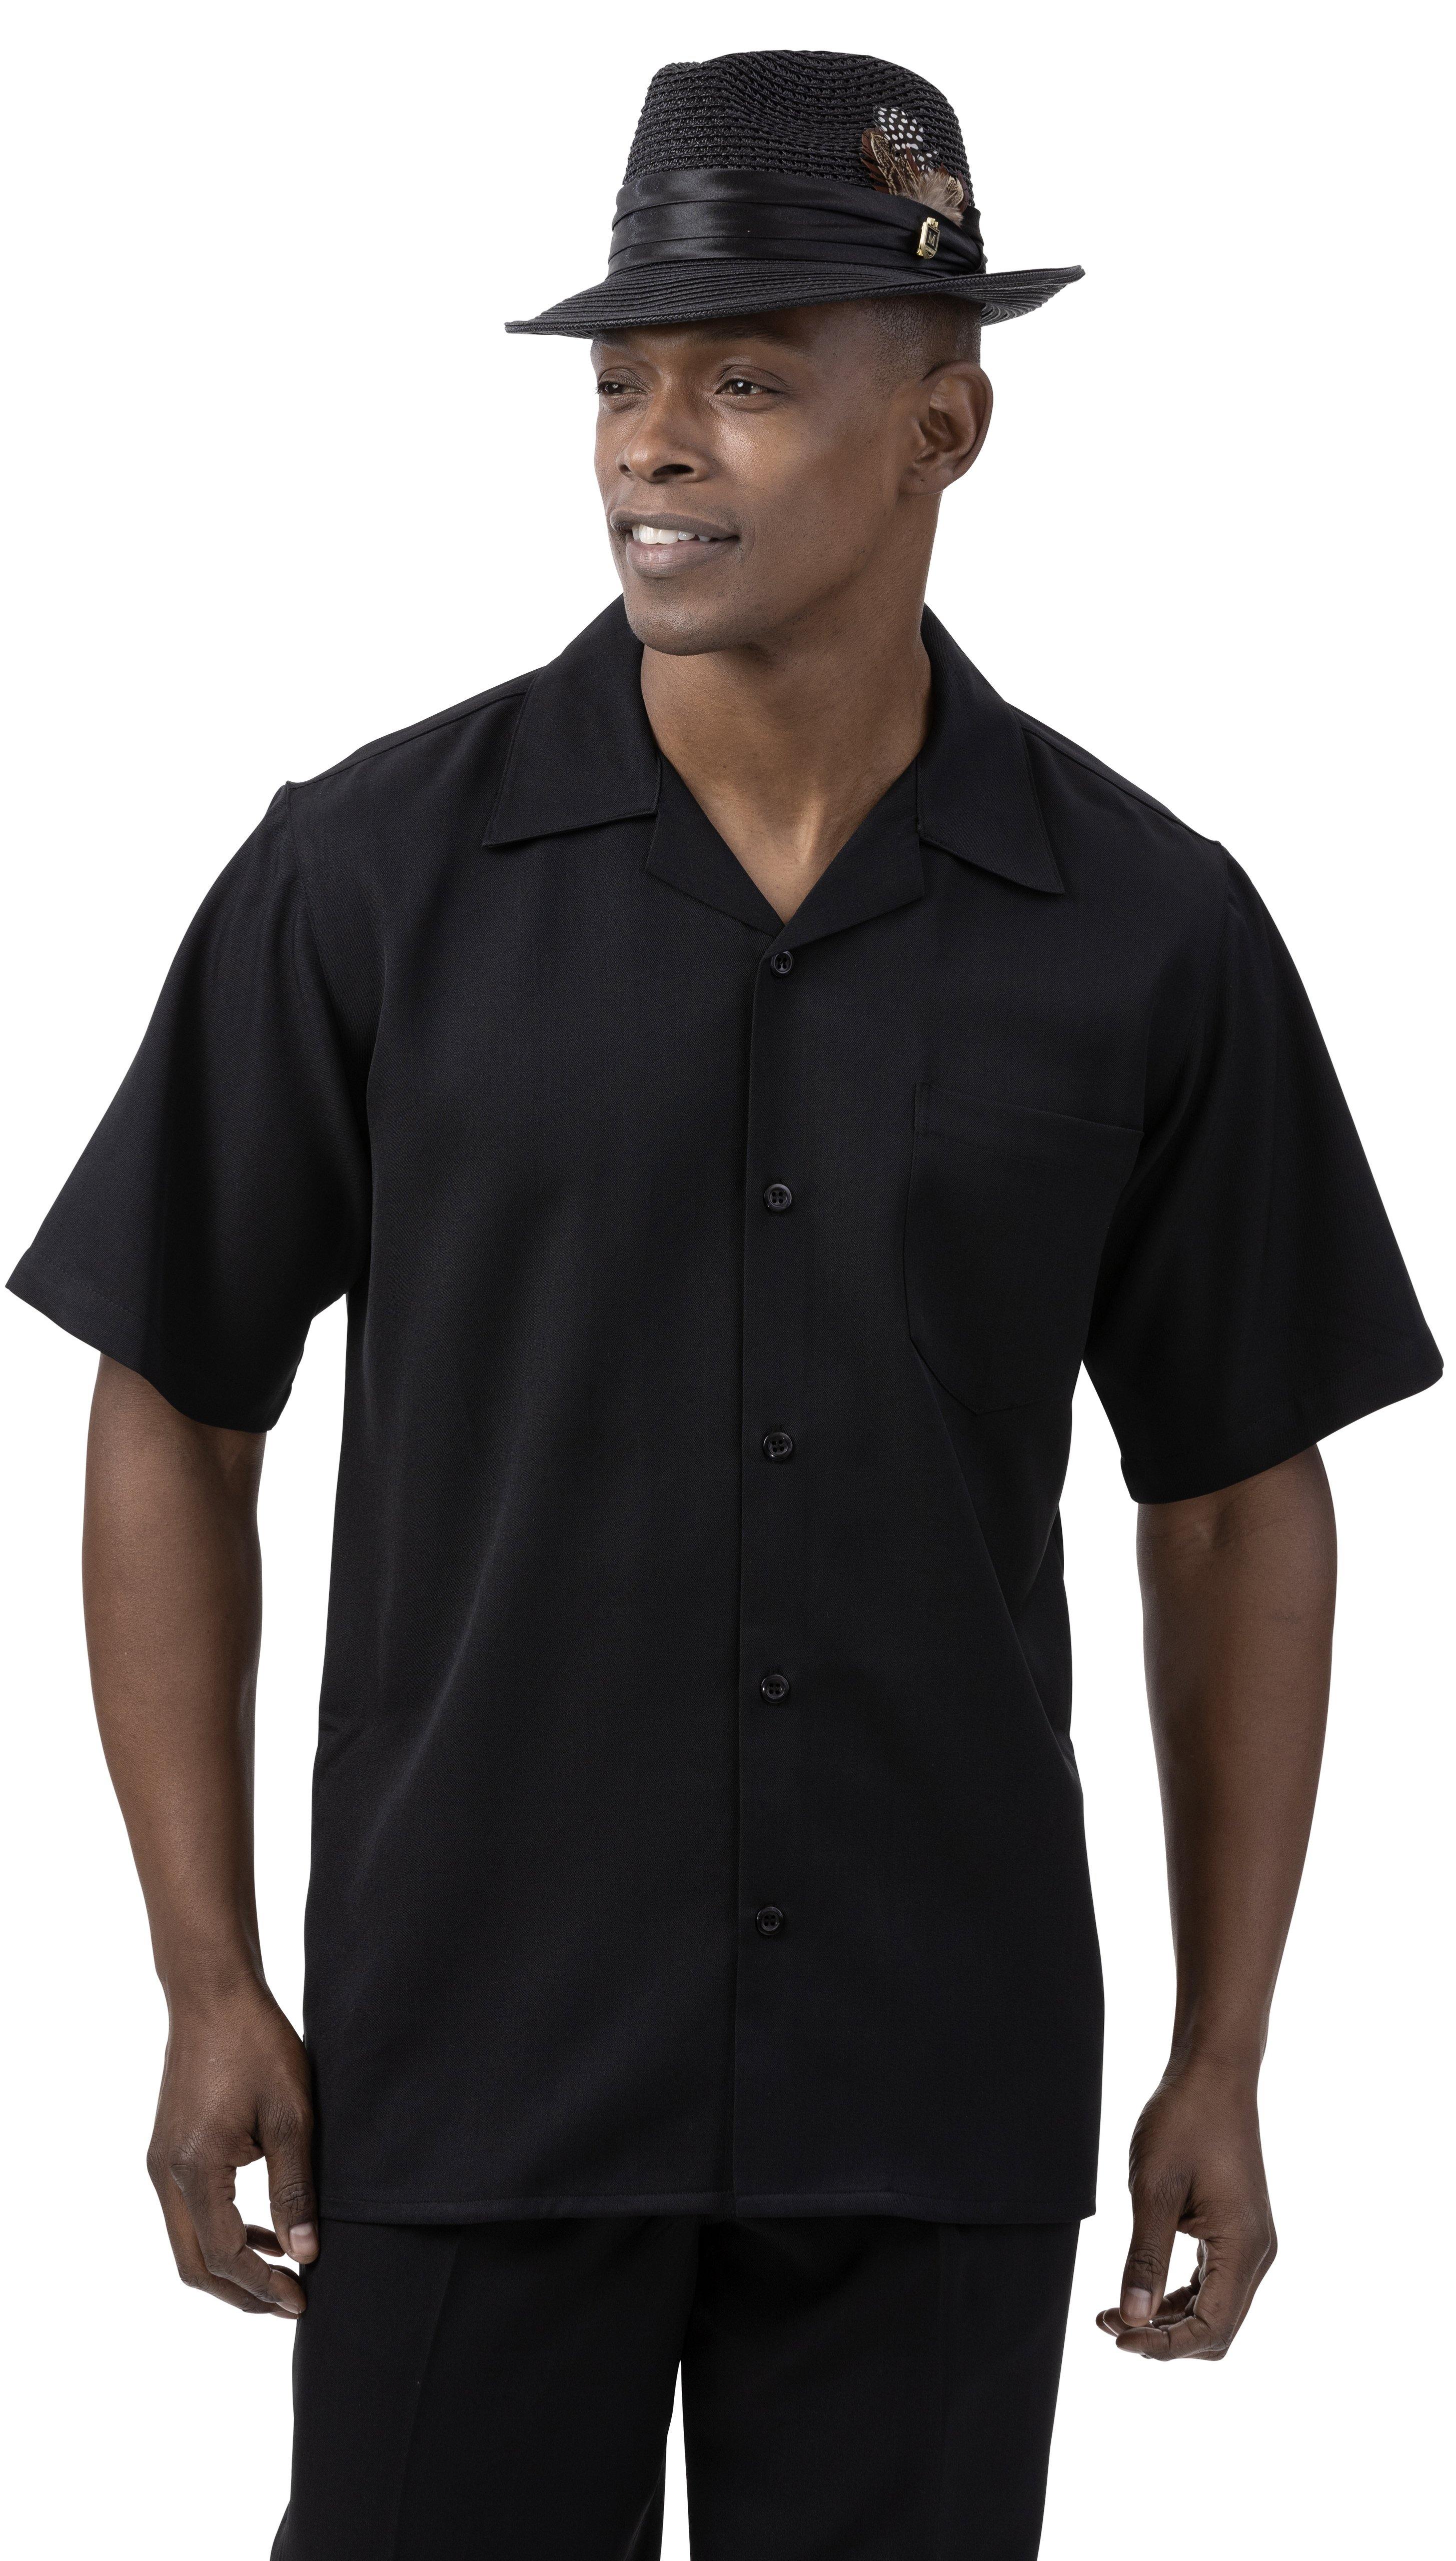 Montique Black Walking Suit Solid Color Short Sleeve Shirt Men's Leisure Suit 696 - Suits & More